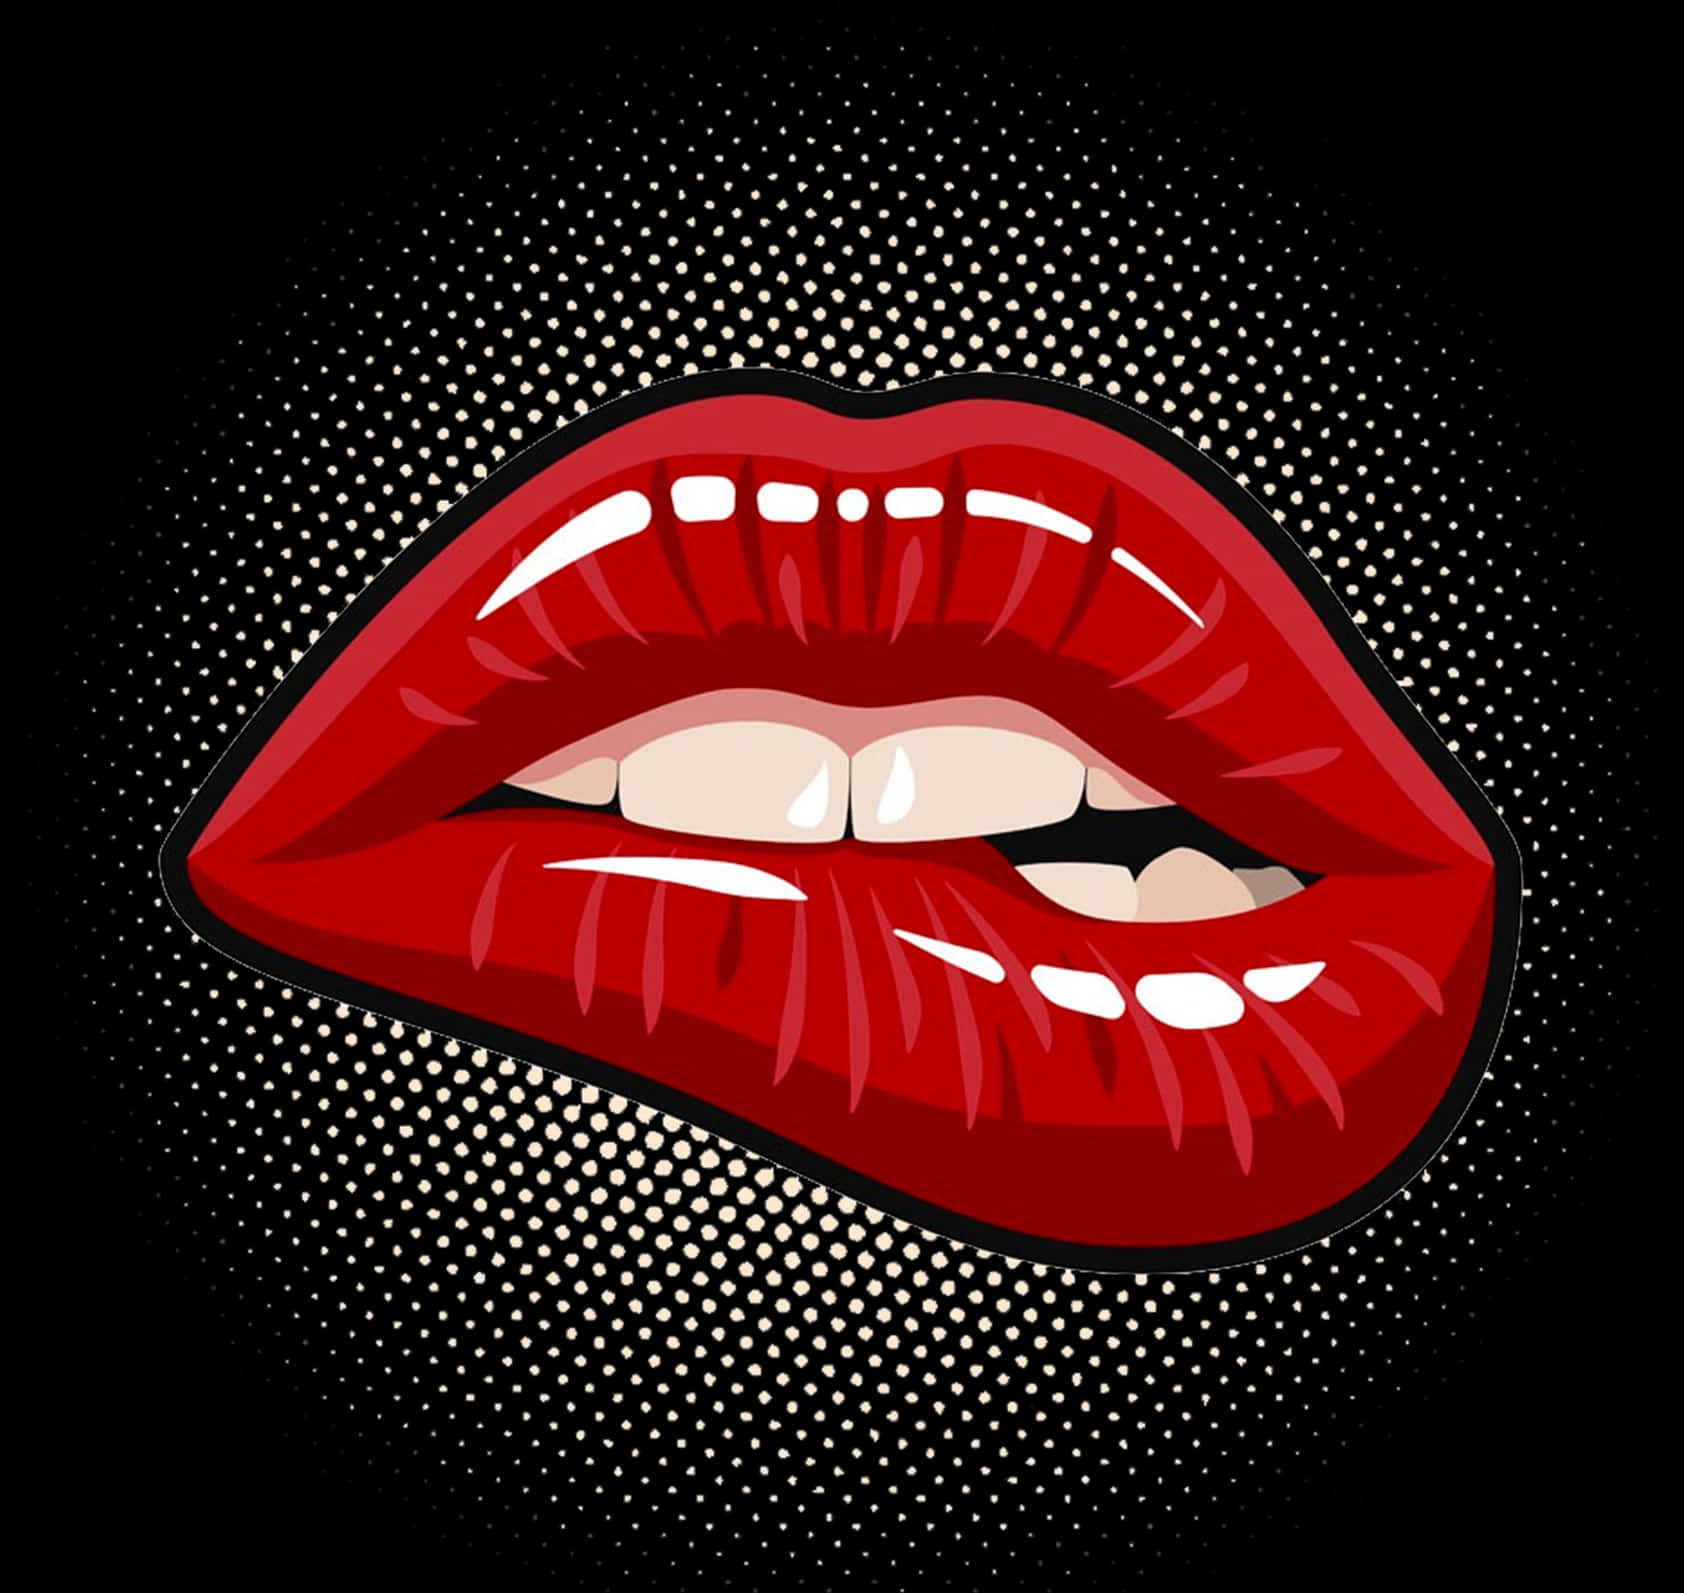 Red Lips Pop Art Illustration PNG image